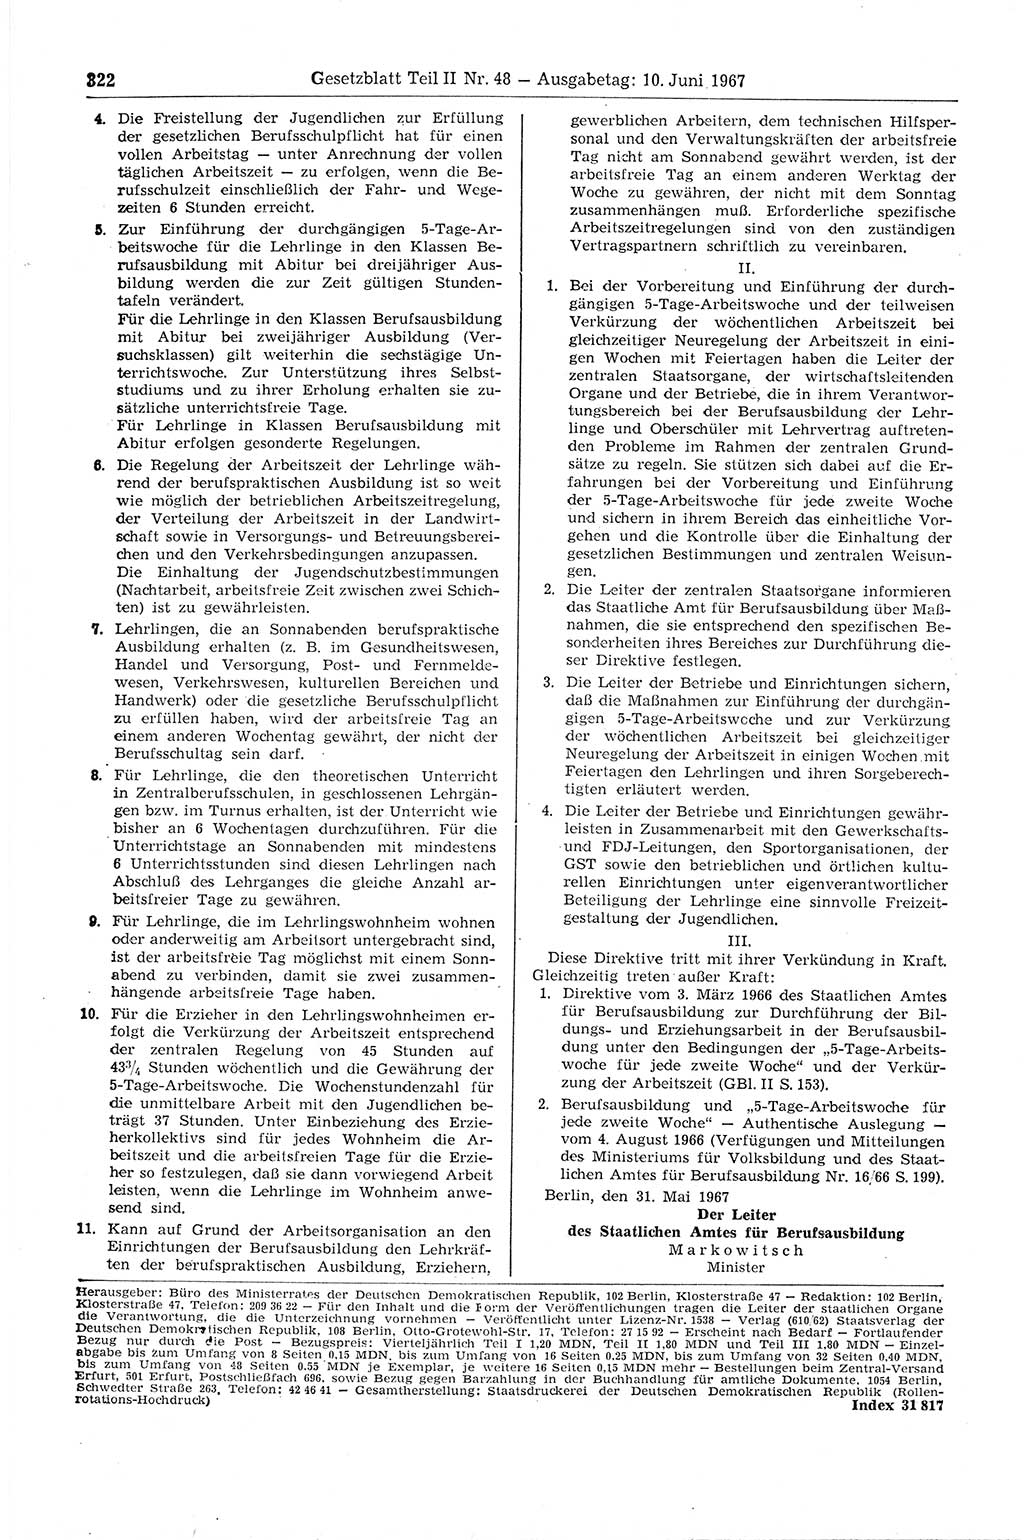 Gesetzblatt (GBl.) der Deutschen Demokratischen Republik (DDR) Teil ⅠⅠ 1967, Seite 322 (GBl. DDR ⅠⅠ 1967, S. 322)